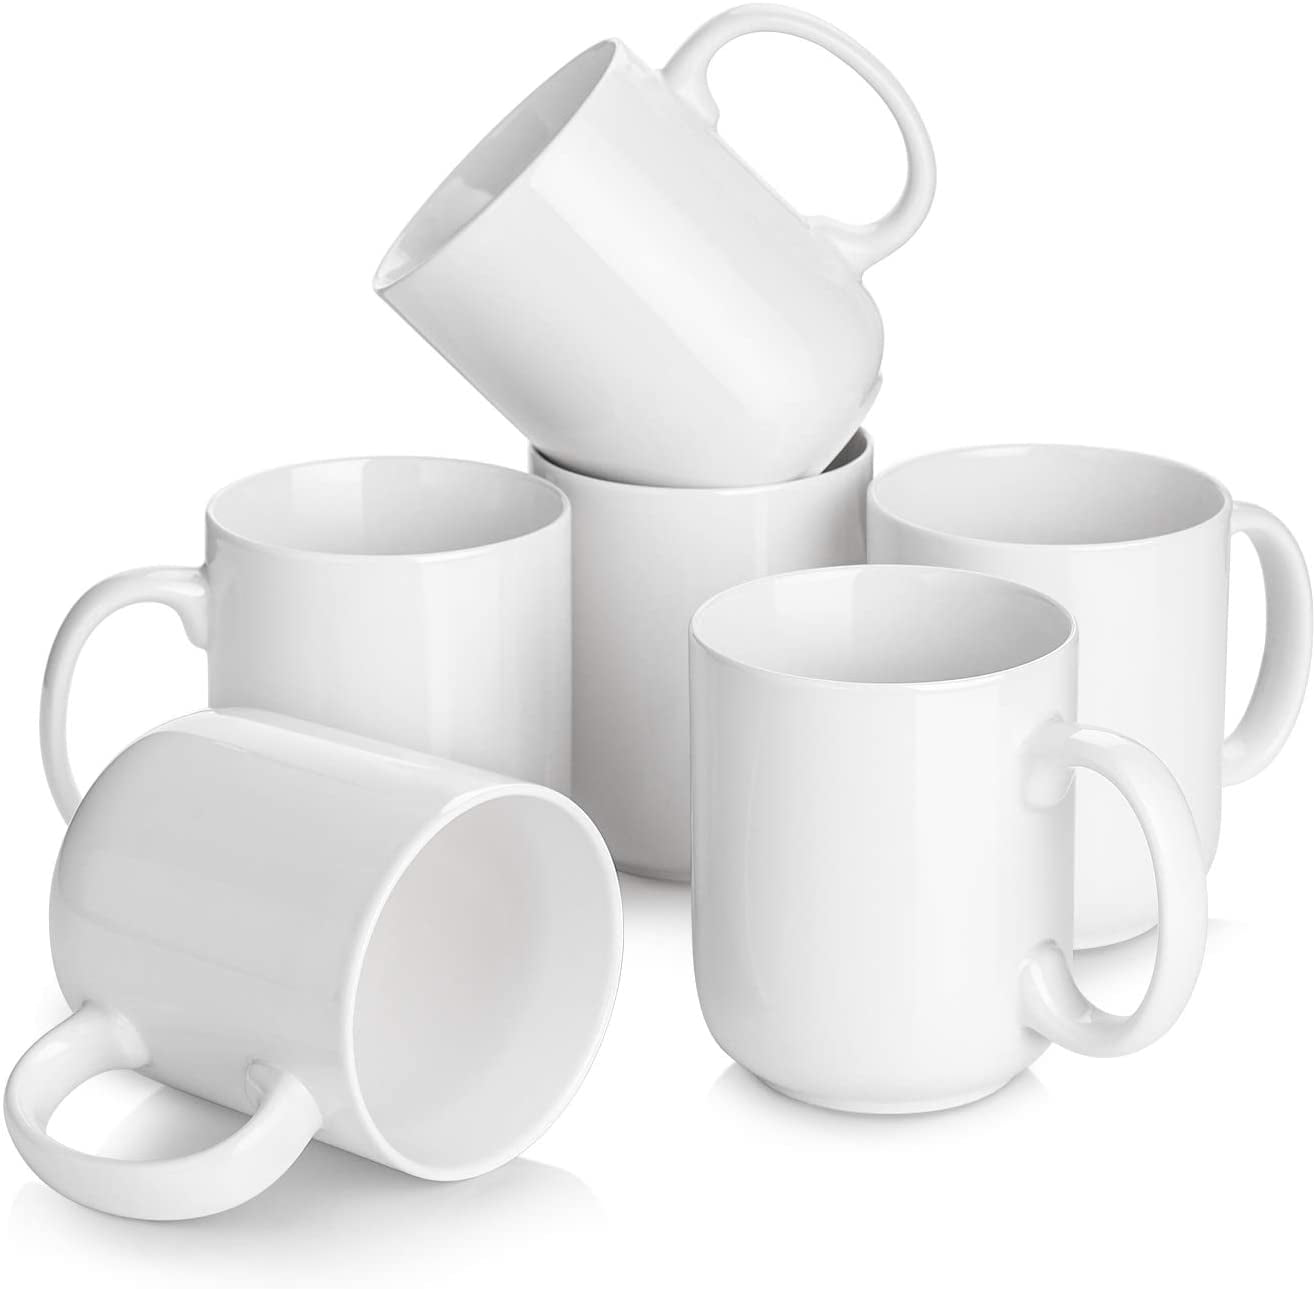 Keyloland Taza de café, tazas de café de 8 onzas, tazas de café de vidrio  borosilicato, tazas de caf…Ver más Keyloland Taza de café, tazas de café de